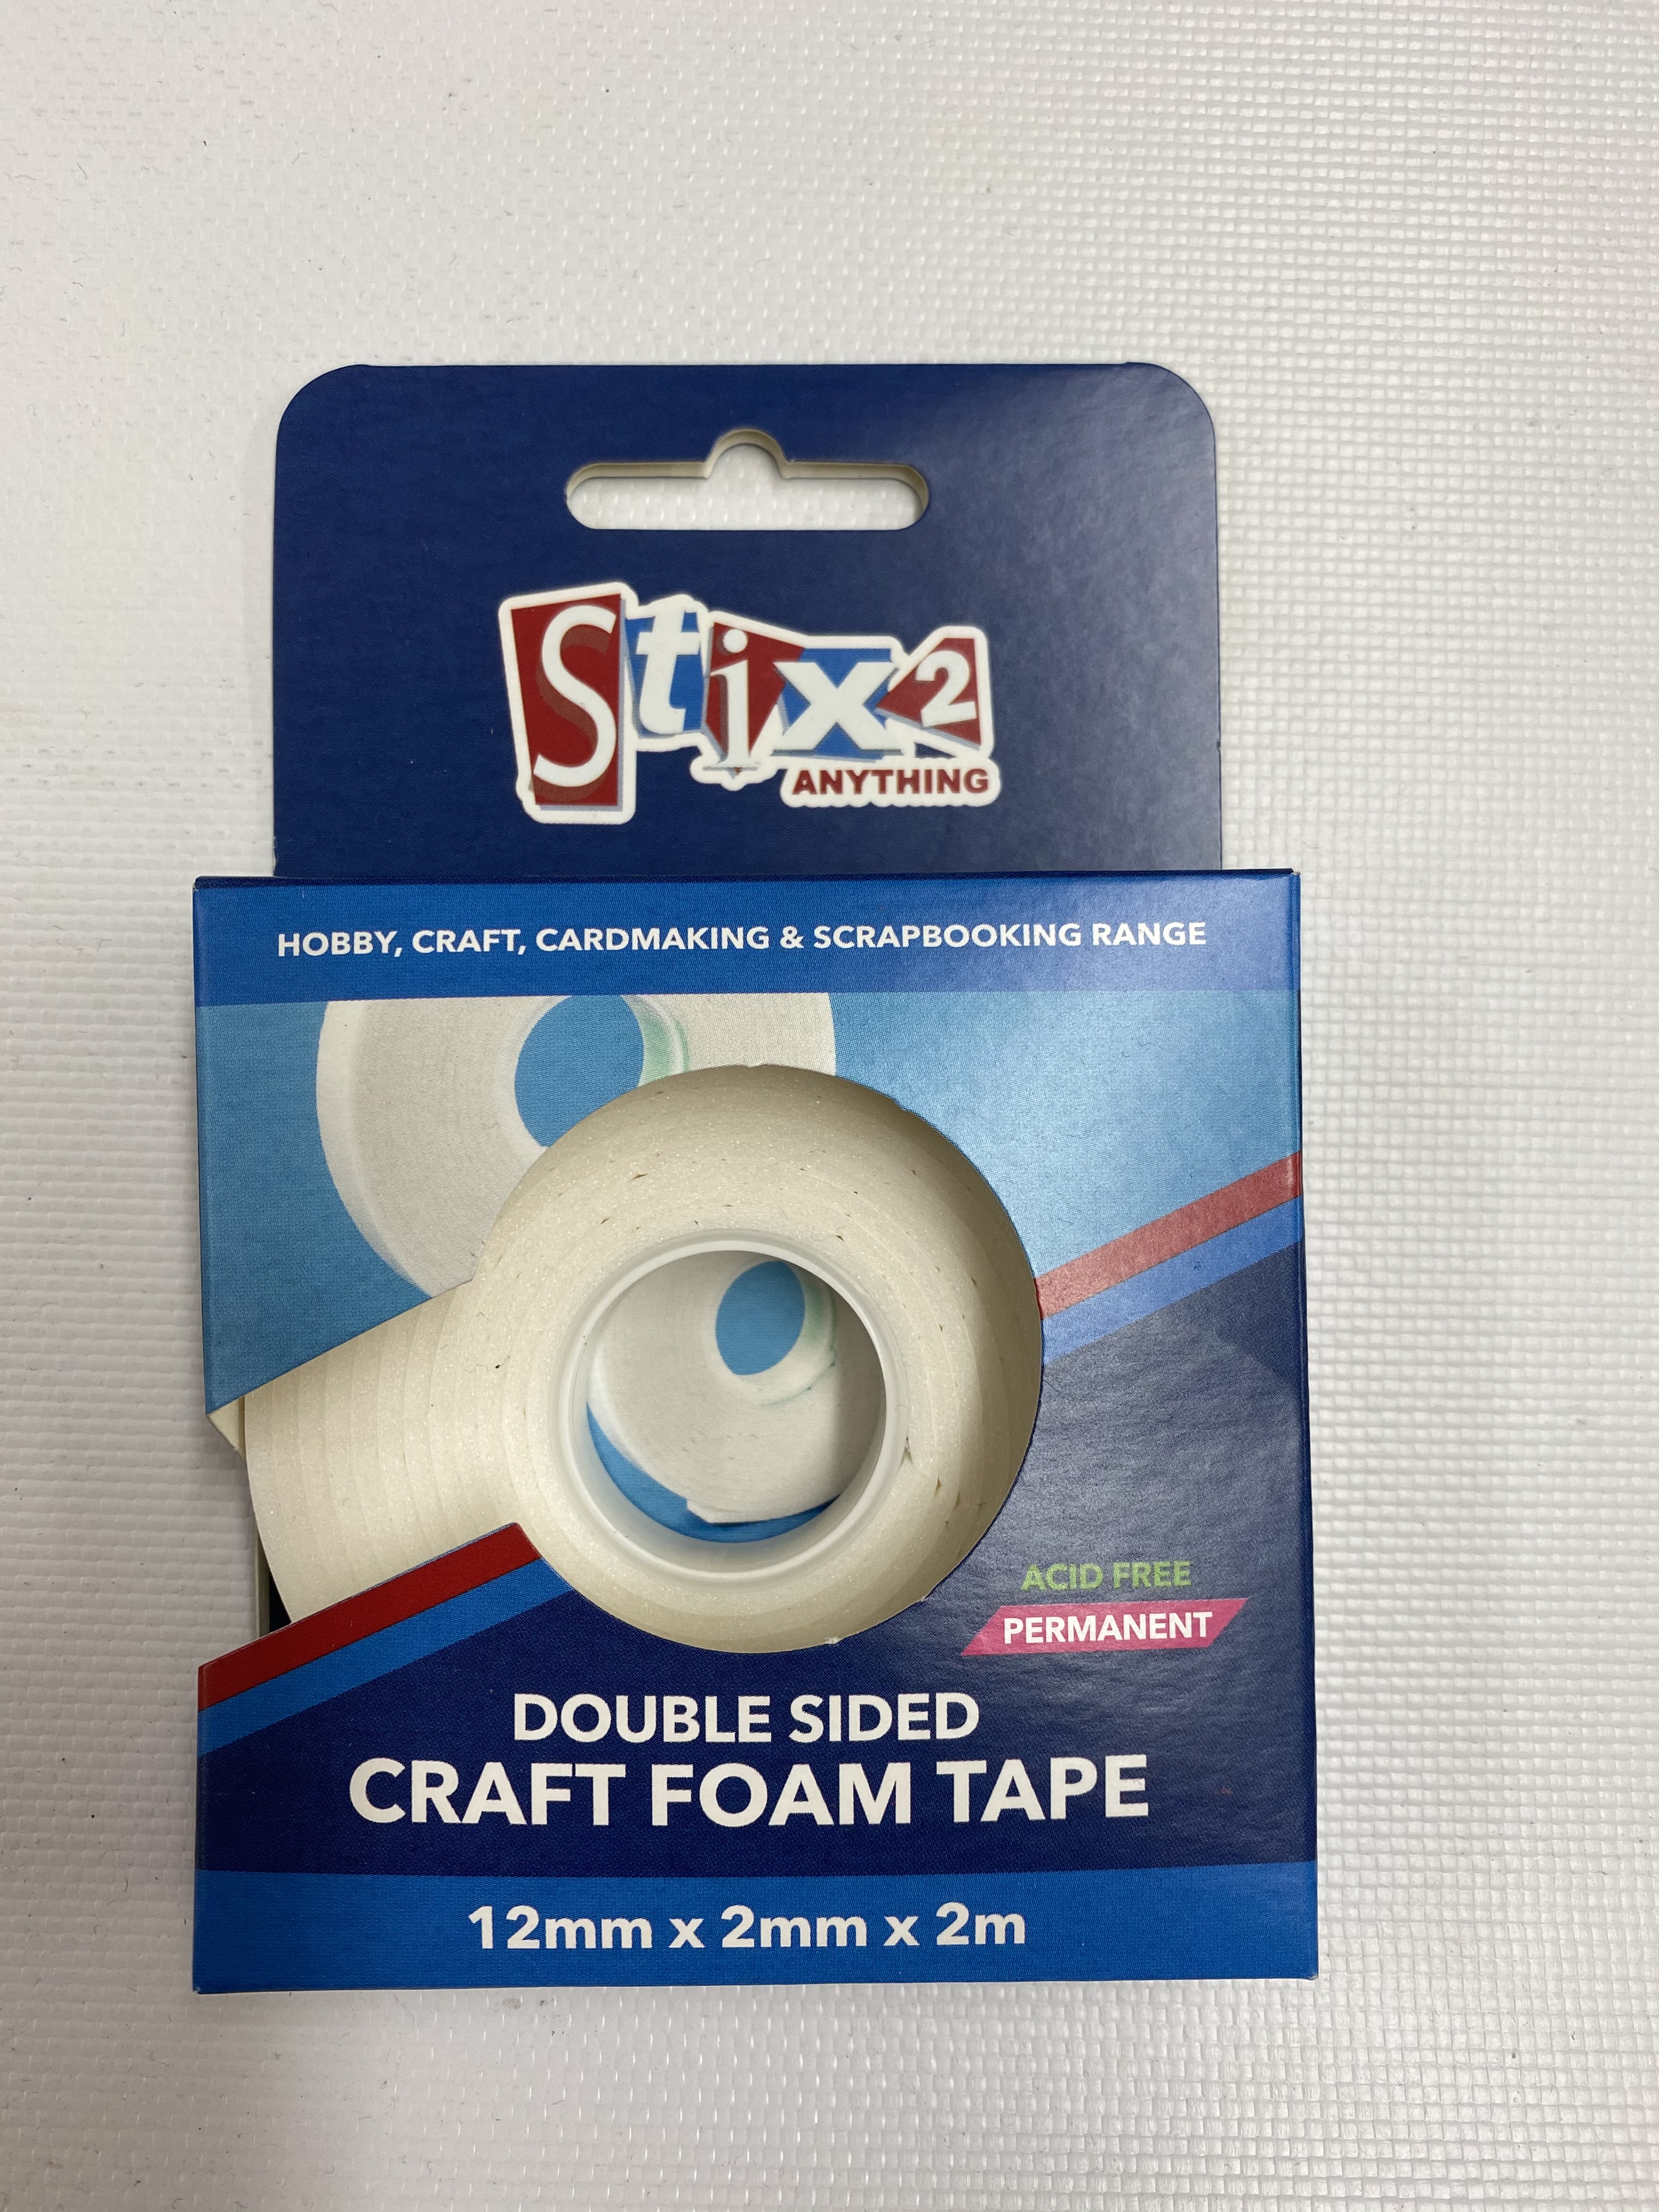 Stix2 Craft Foam Tape Roll Double Sided | 12mm x 2mm x 2m